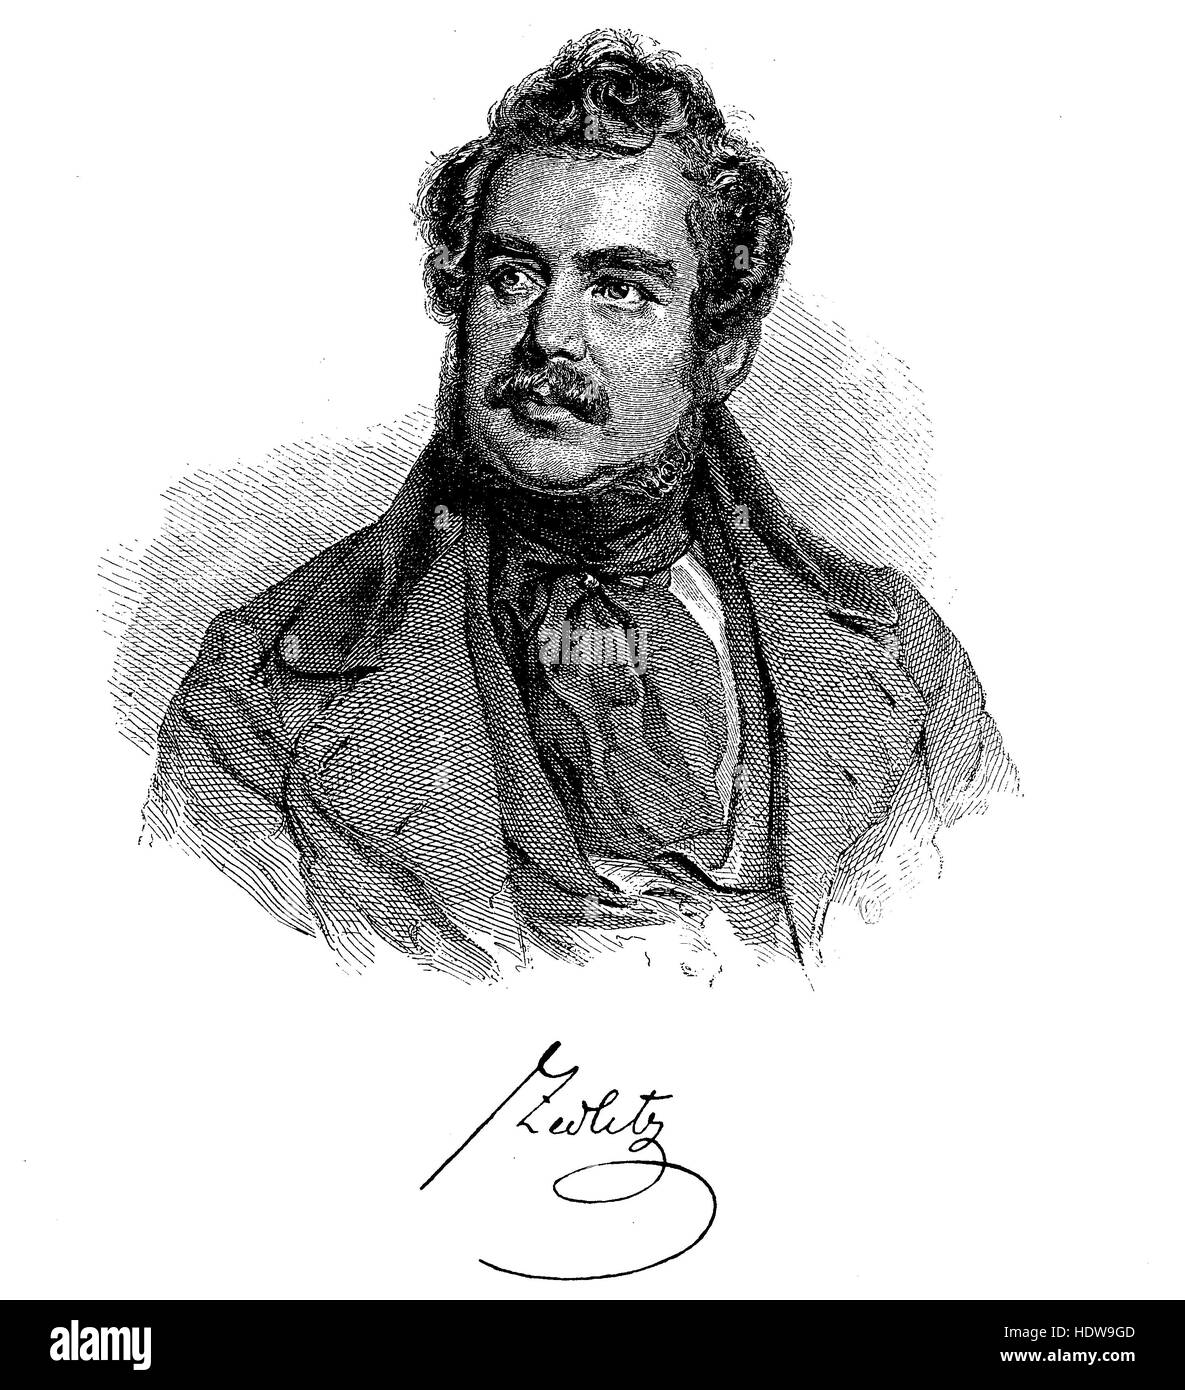 Joseph Christian Freiherr von Zedlitz ou Baron Joseph Christian von Zedlitz, 1790-1862, un dramaturge autrichien et poète épique, gravure sur bois de l'année 1880 Banque D'Images